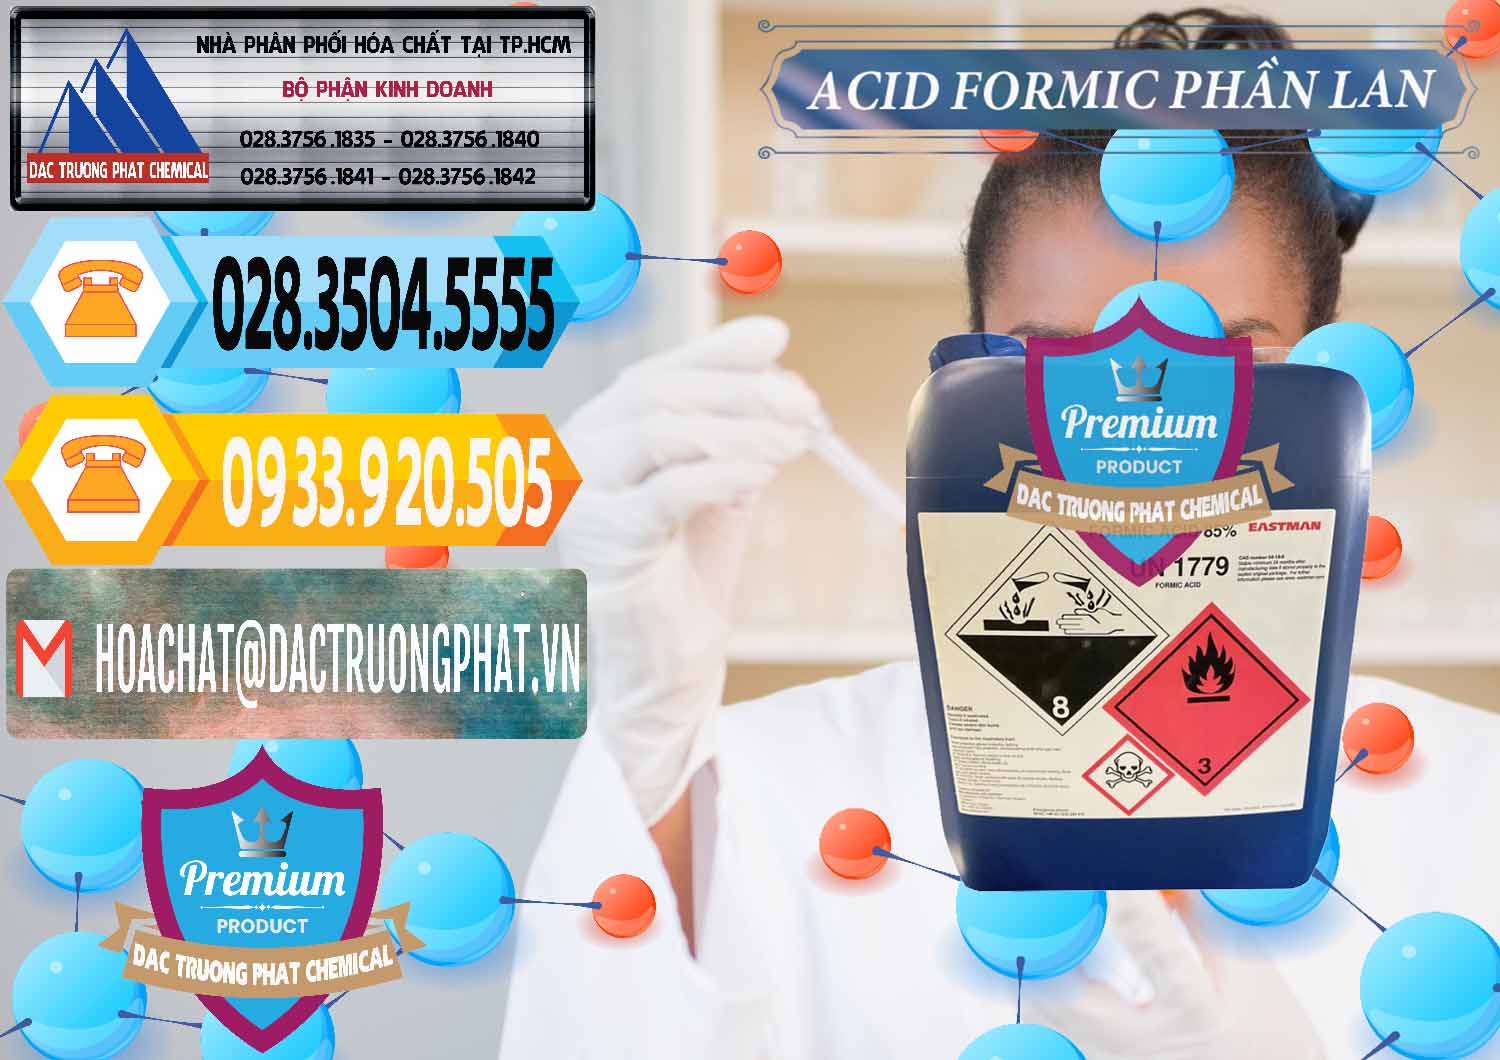 Nơi bán ( cung ứng ) Acid Formic - Axit Formic Phần Lan Finland - 0376 - Cty chuyên phân phối và nhập khẩu hóa chất tại TP.HCM - hoachattayrua.net